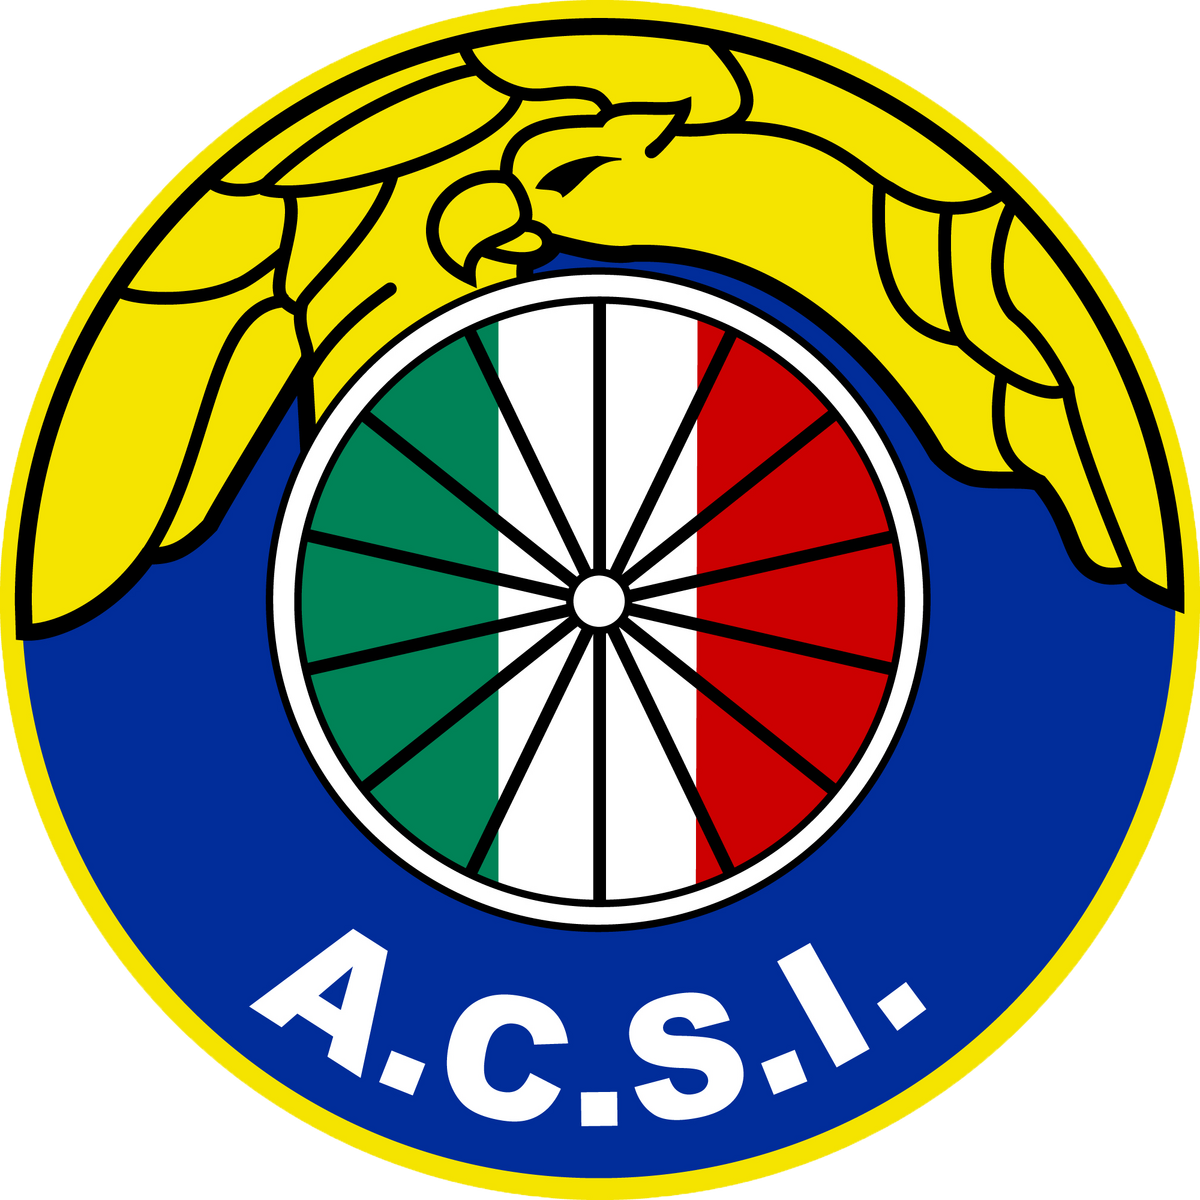 Audax Italiano - Wikipedia